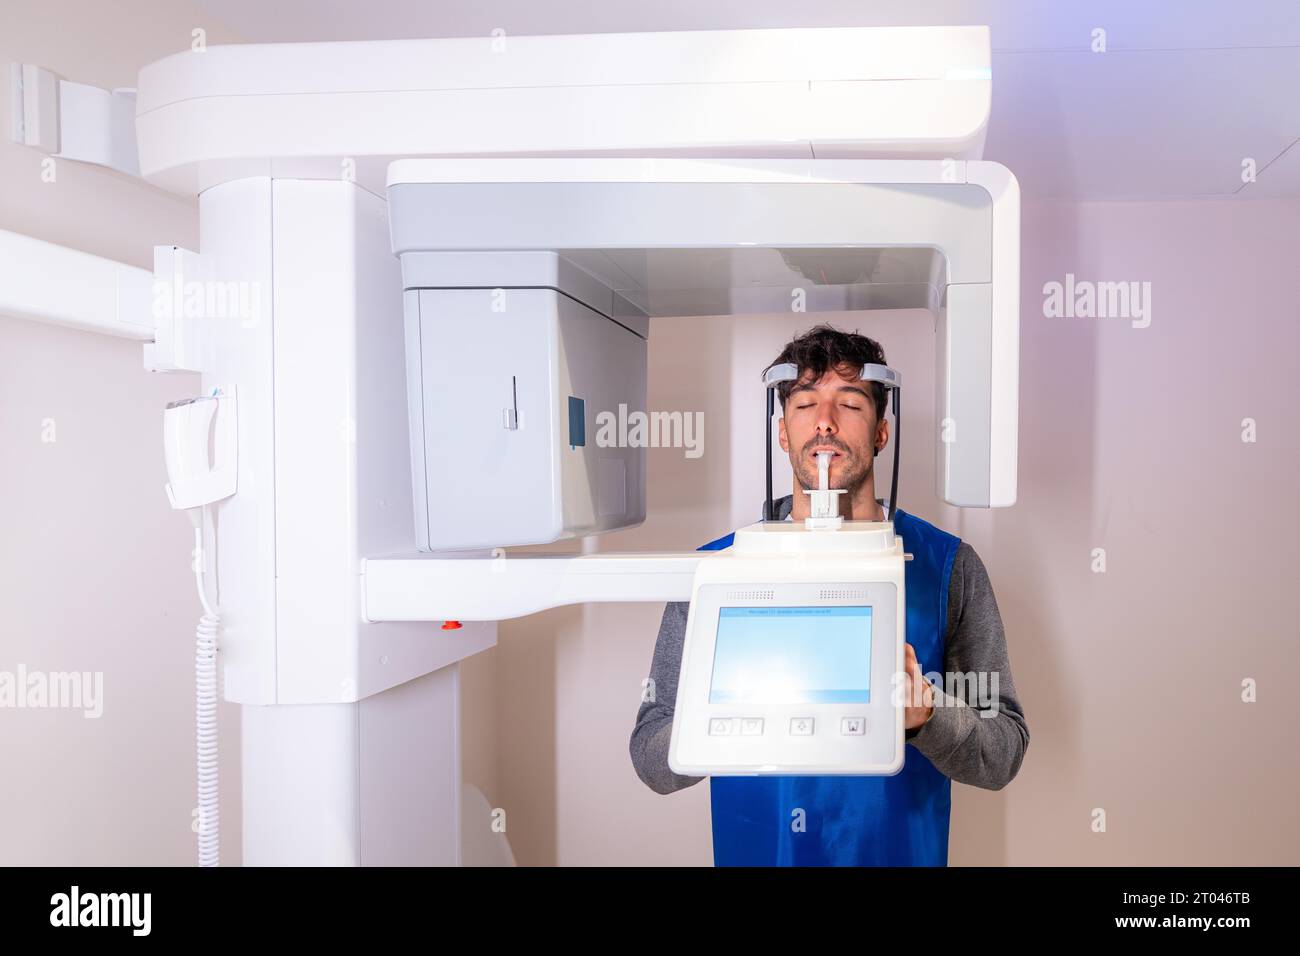 Vue de face d'un homme les yeux fermés dans un appareil radiographique dentaire Banque D'Images